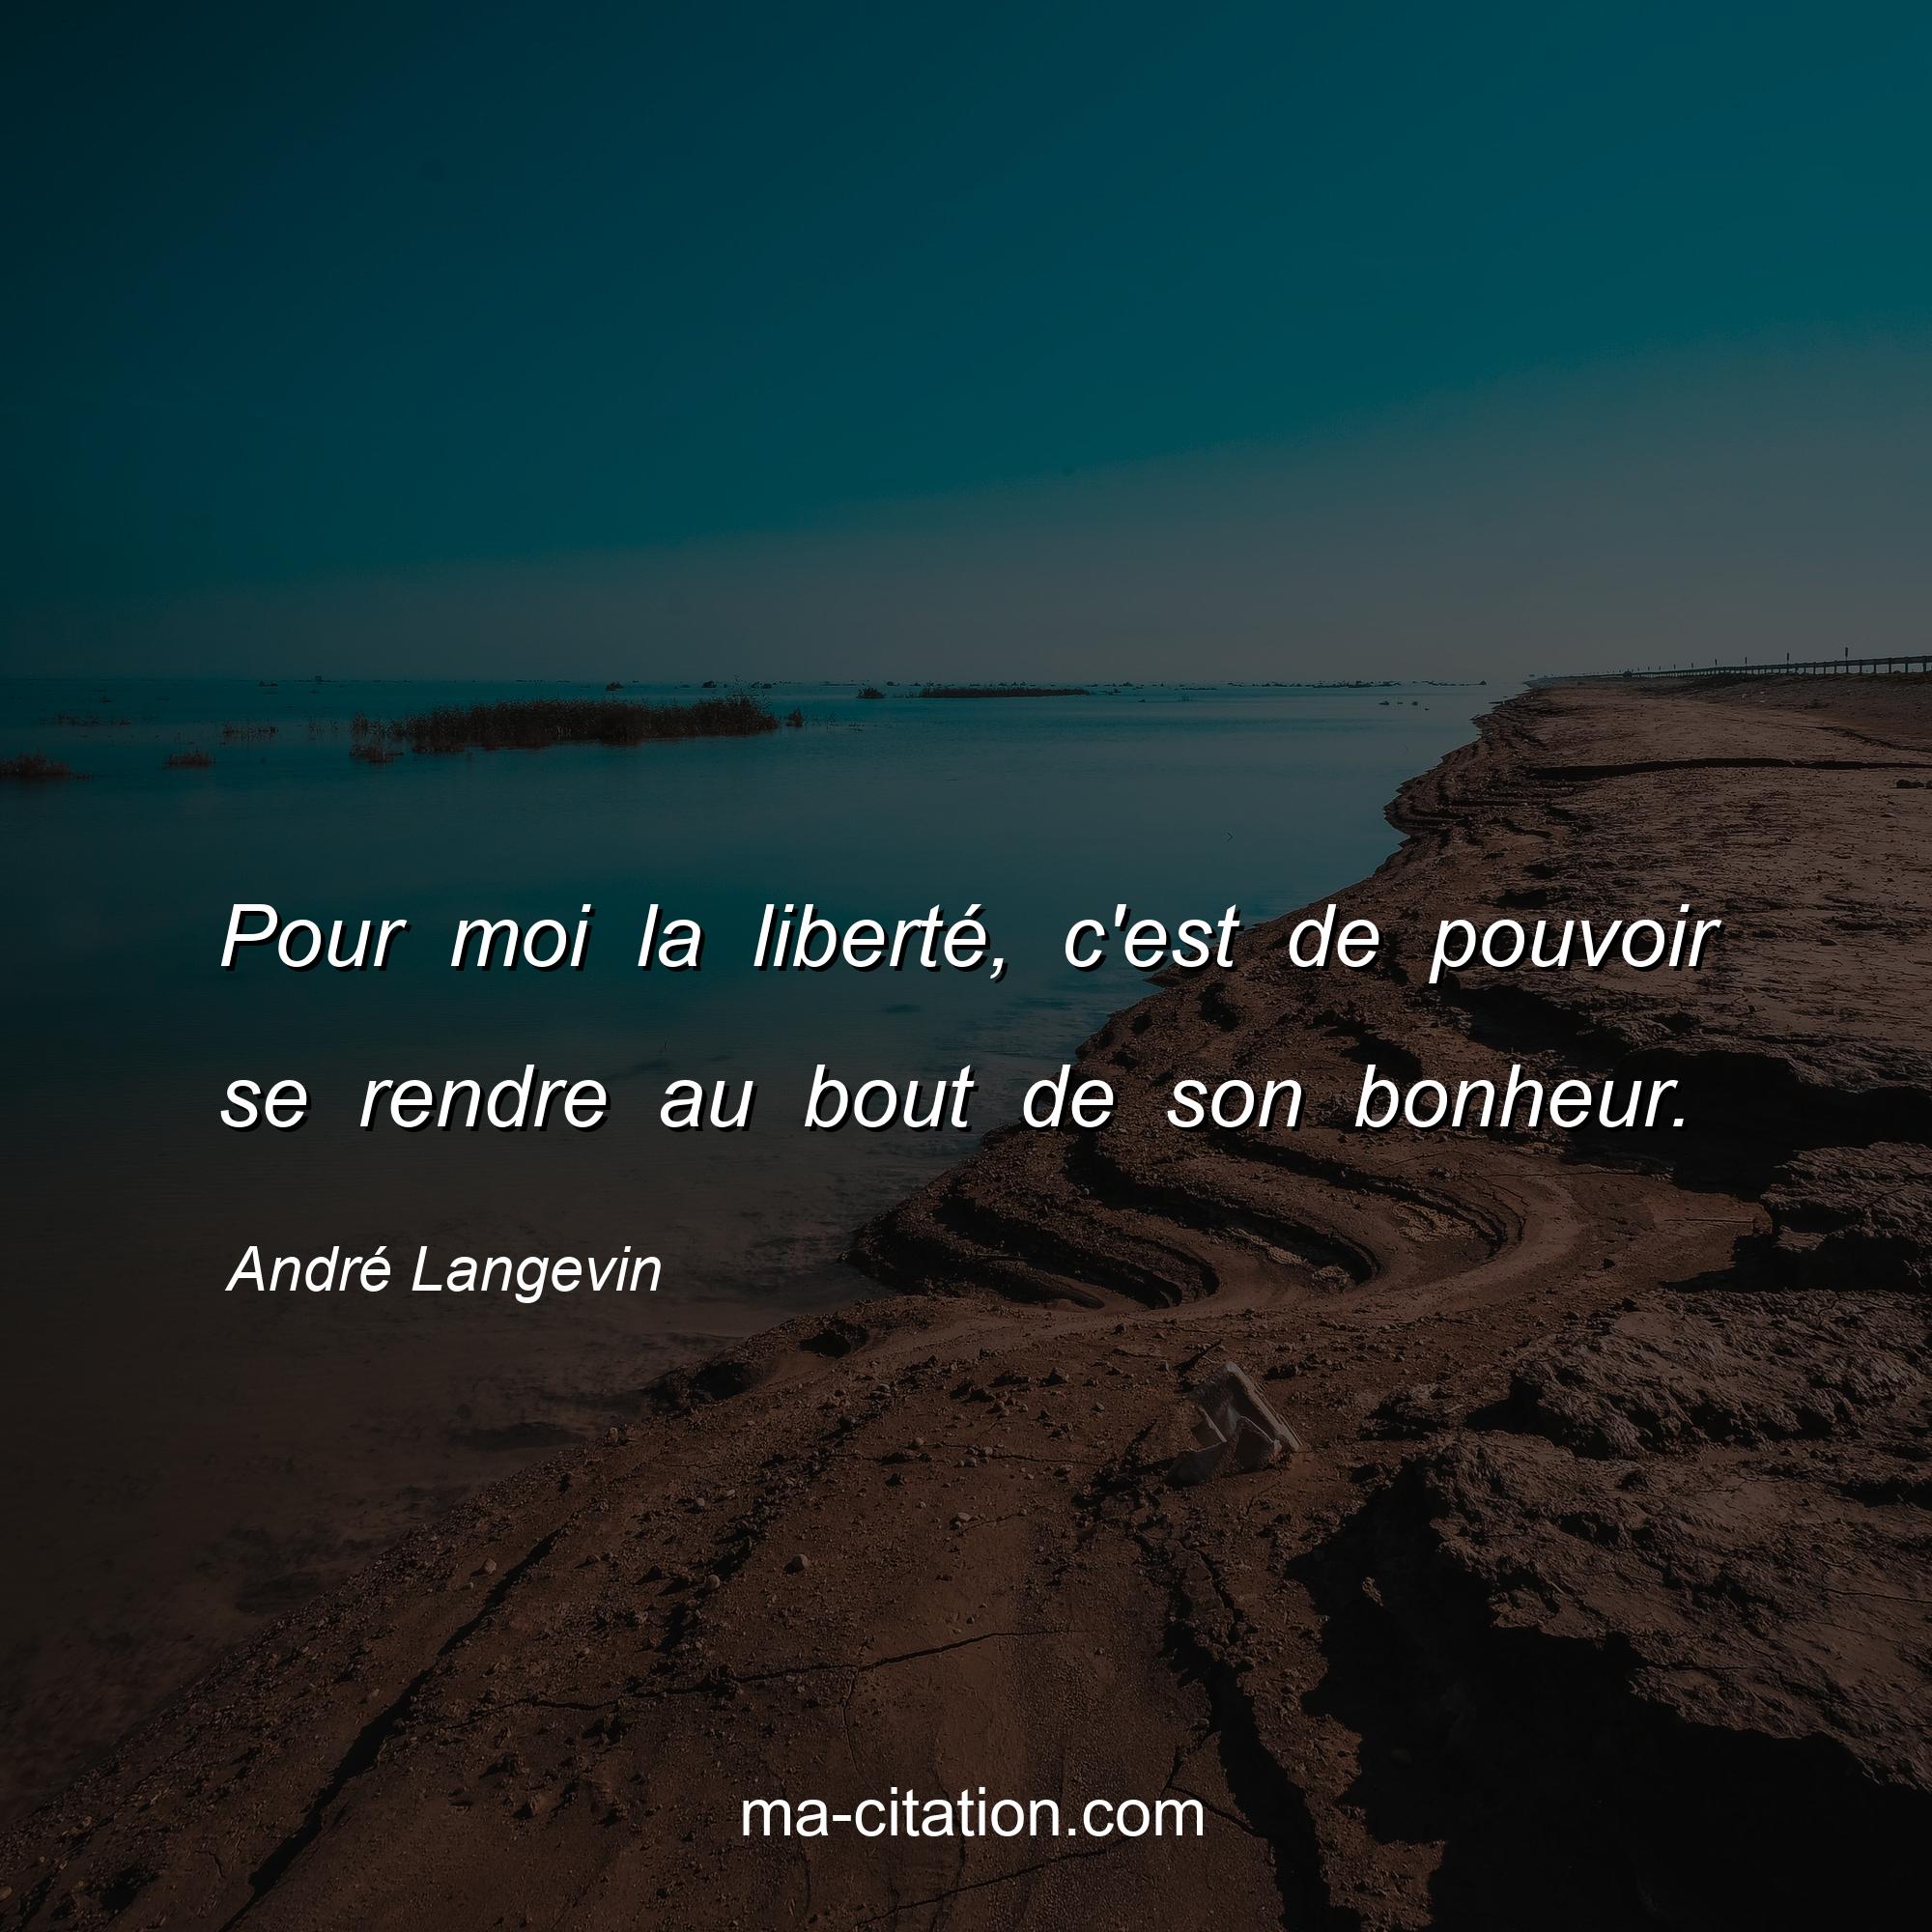 André Langevin : Pour moi la liberté, c'est de pouvoir se rendre au bout de son bonheur.